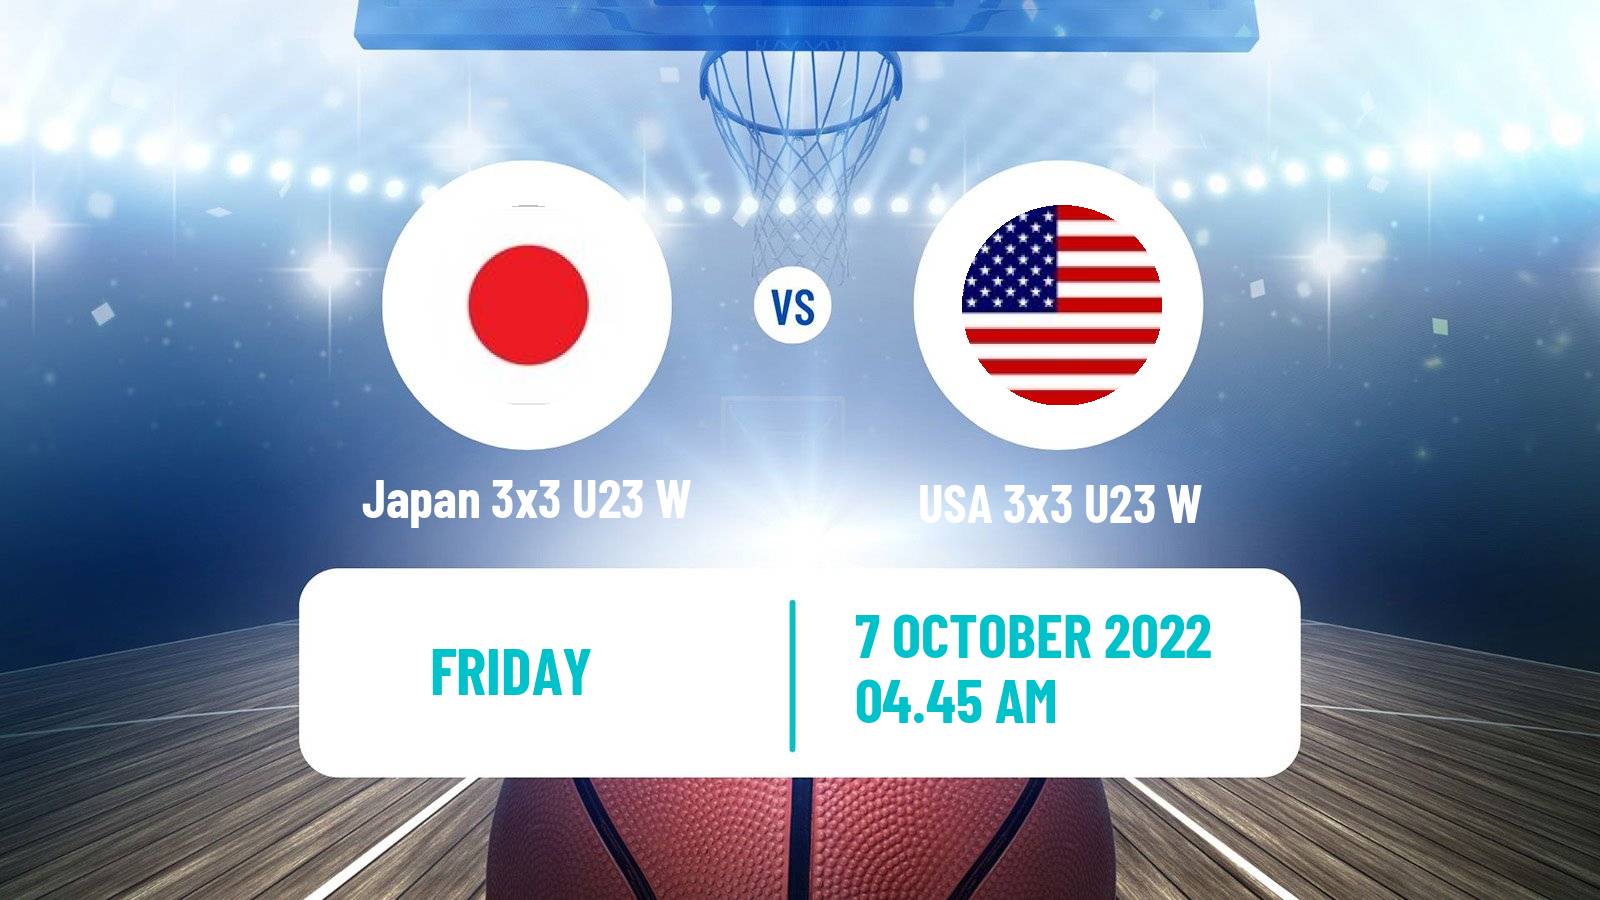 Basketball World Cup Basketball 3x3 U23 Women Japan 3x3 U23 W - USA 3x3 U23 W